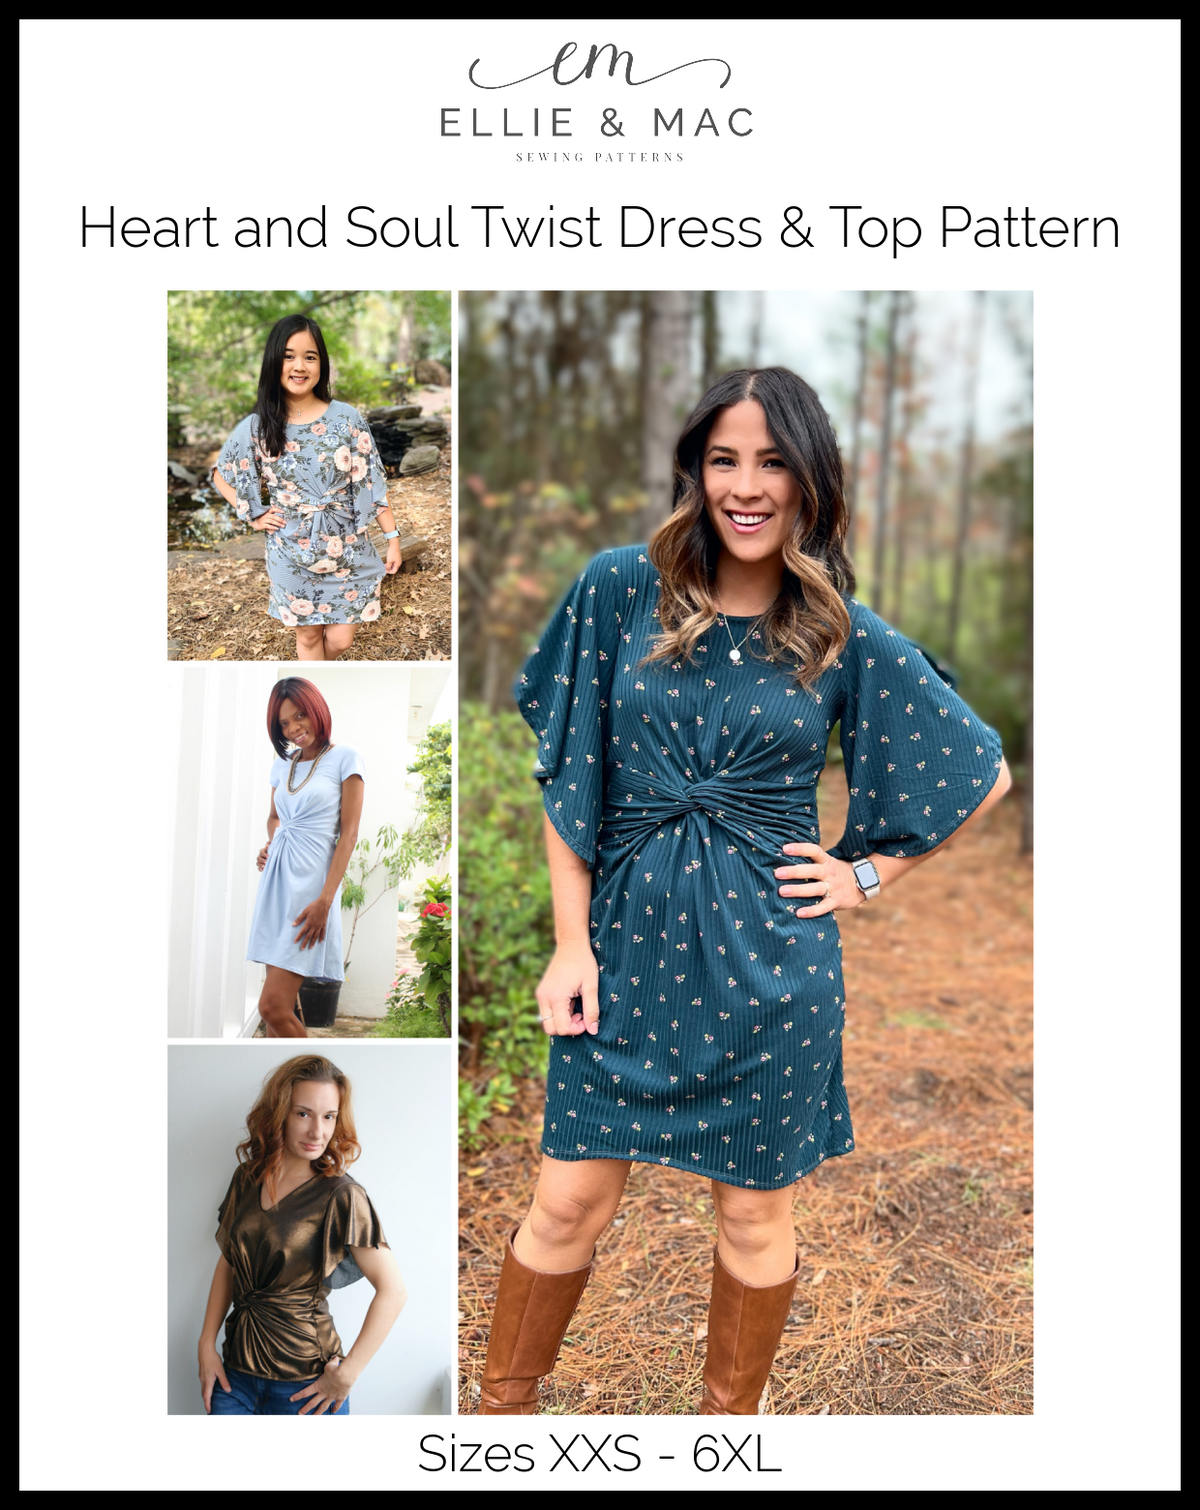 Heart and Soul Twist Dress & Top Pattern